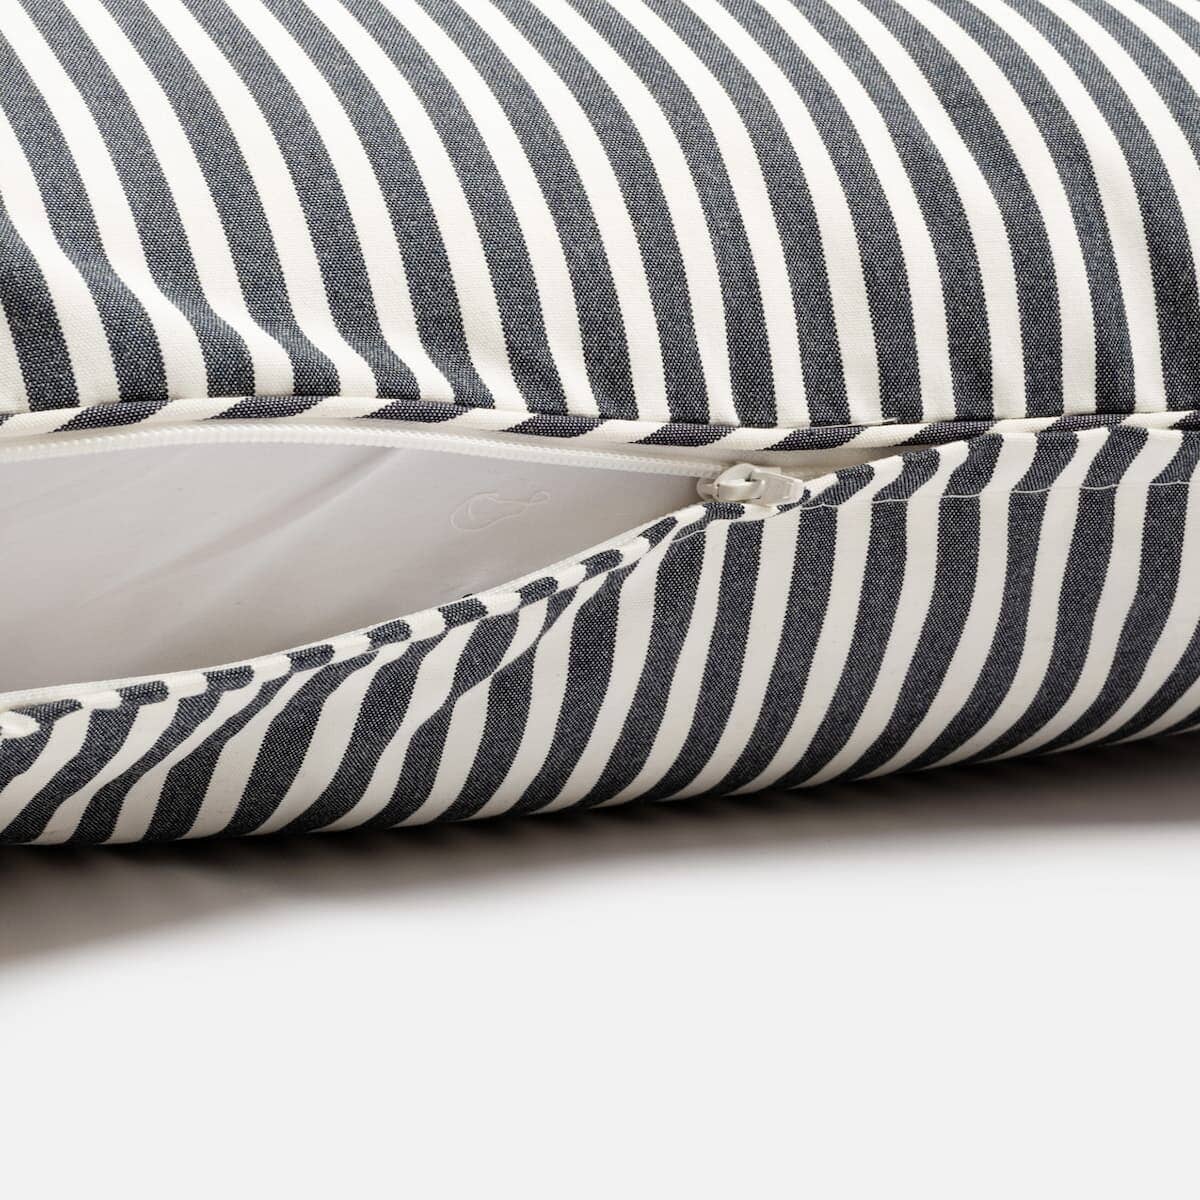 The Euro Throw Pillow - Lauren's Navy Stripe Euro Throw Pillow Business & Pleasure Co Aus 